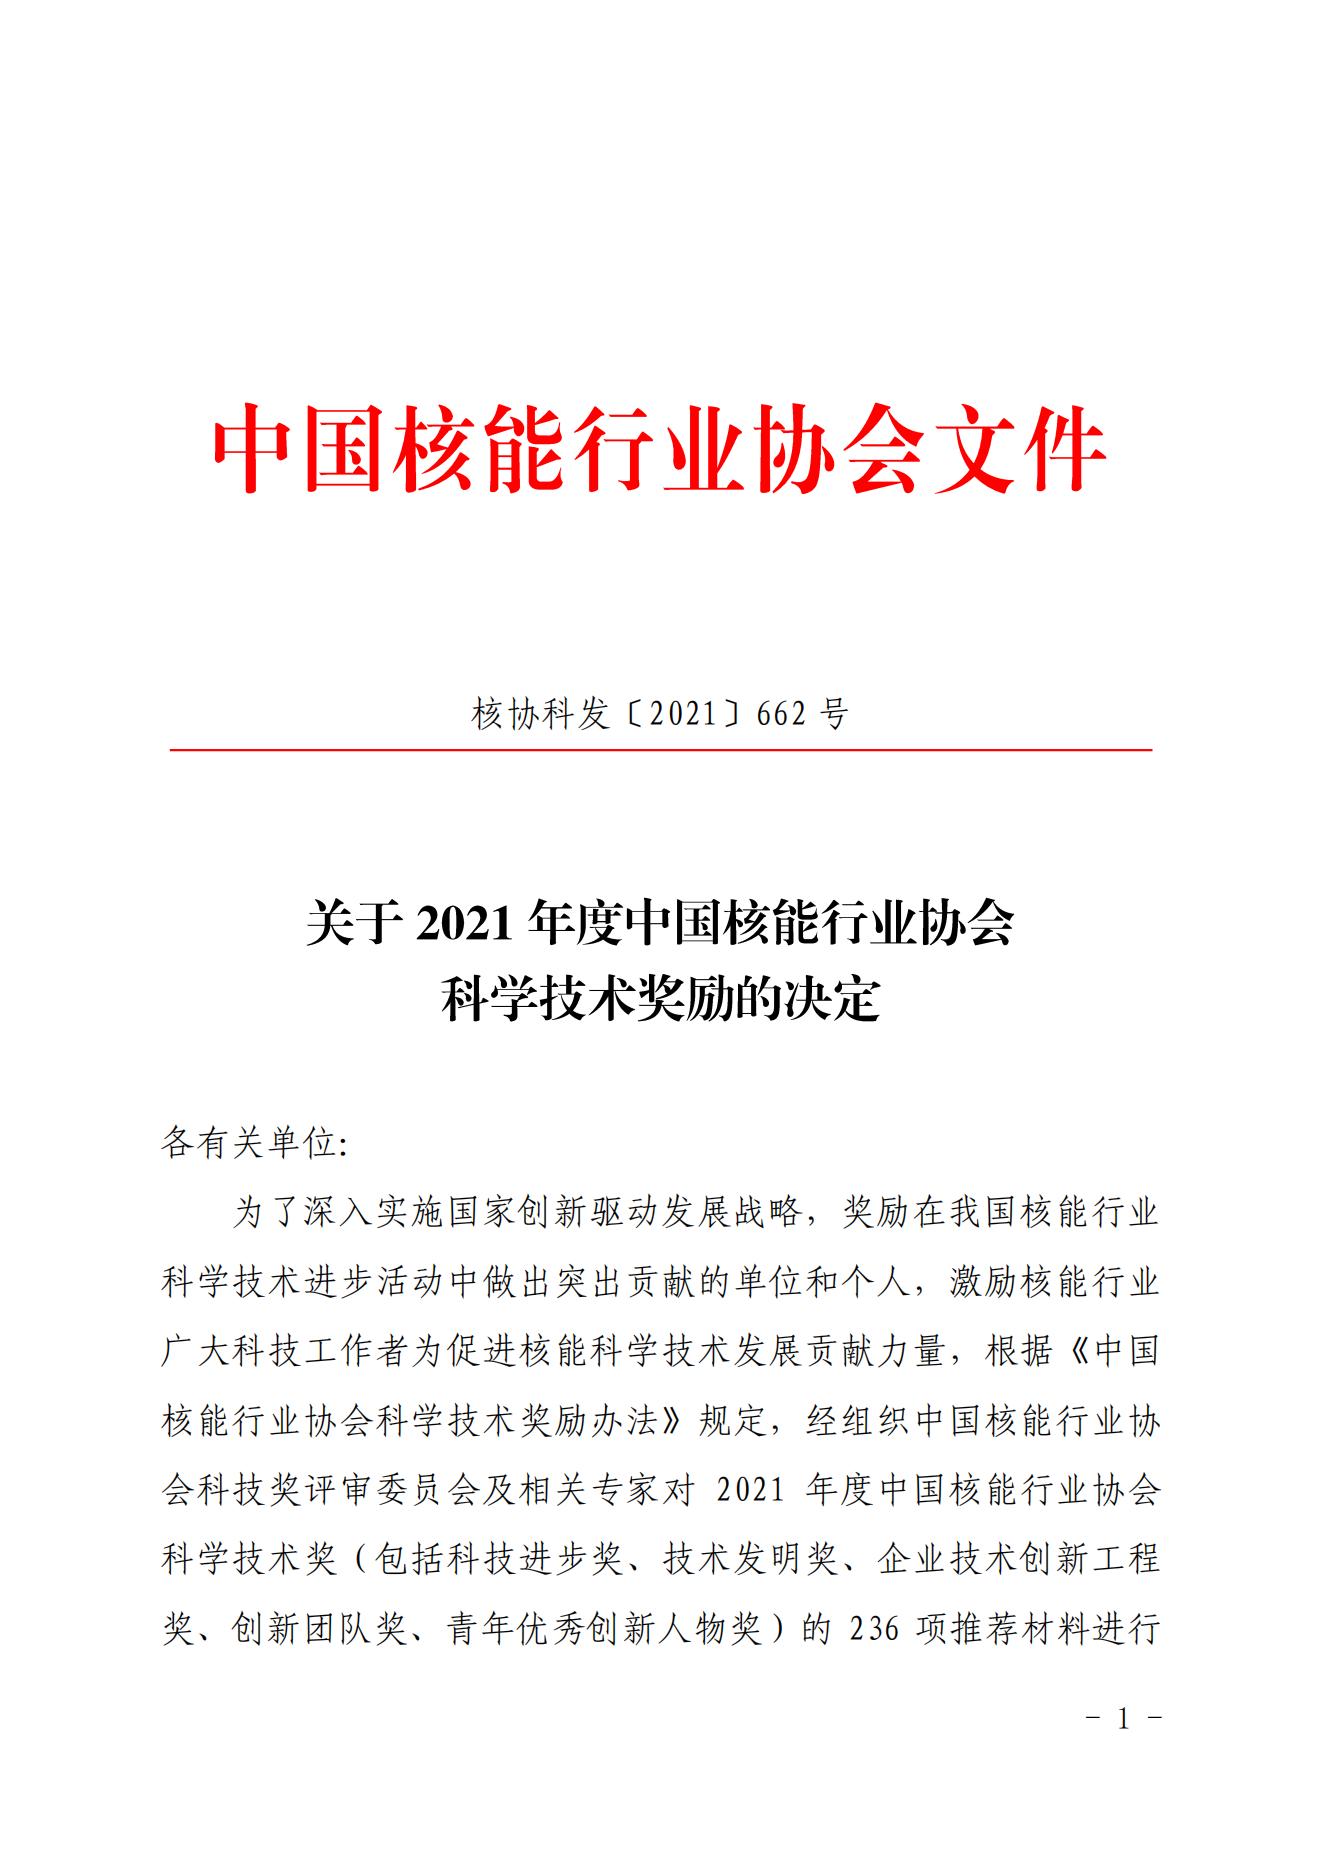 关于2021年度中国核能行业协会科技奖励决定_00.jpg